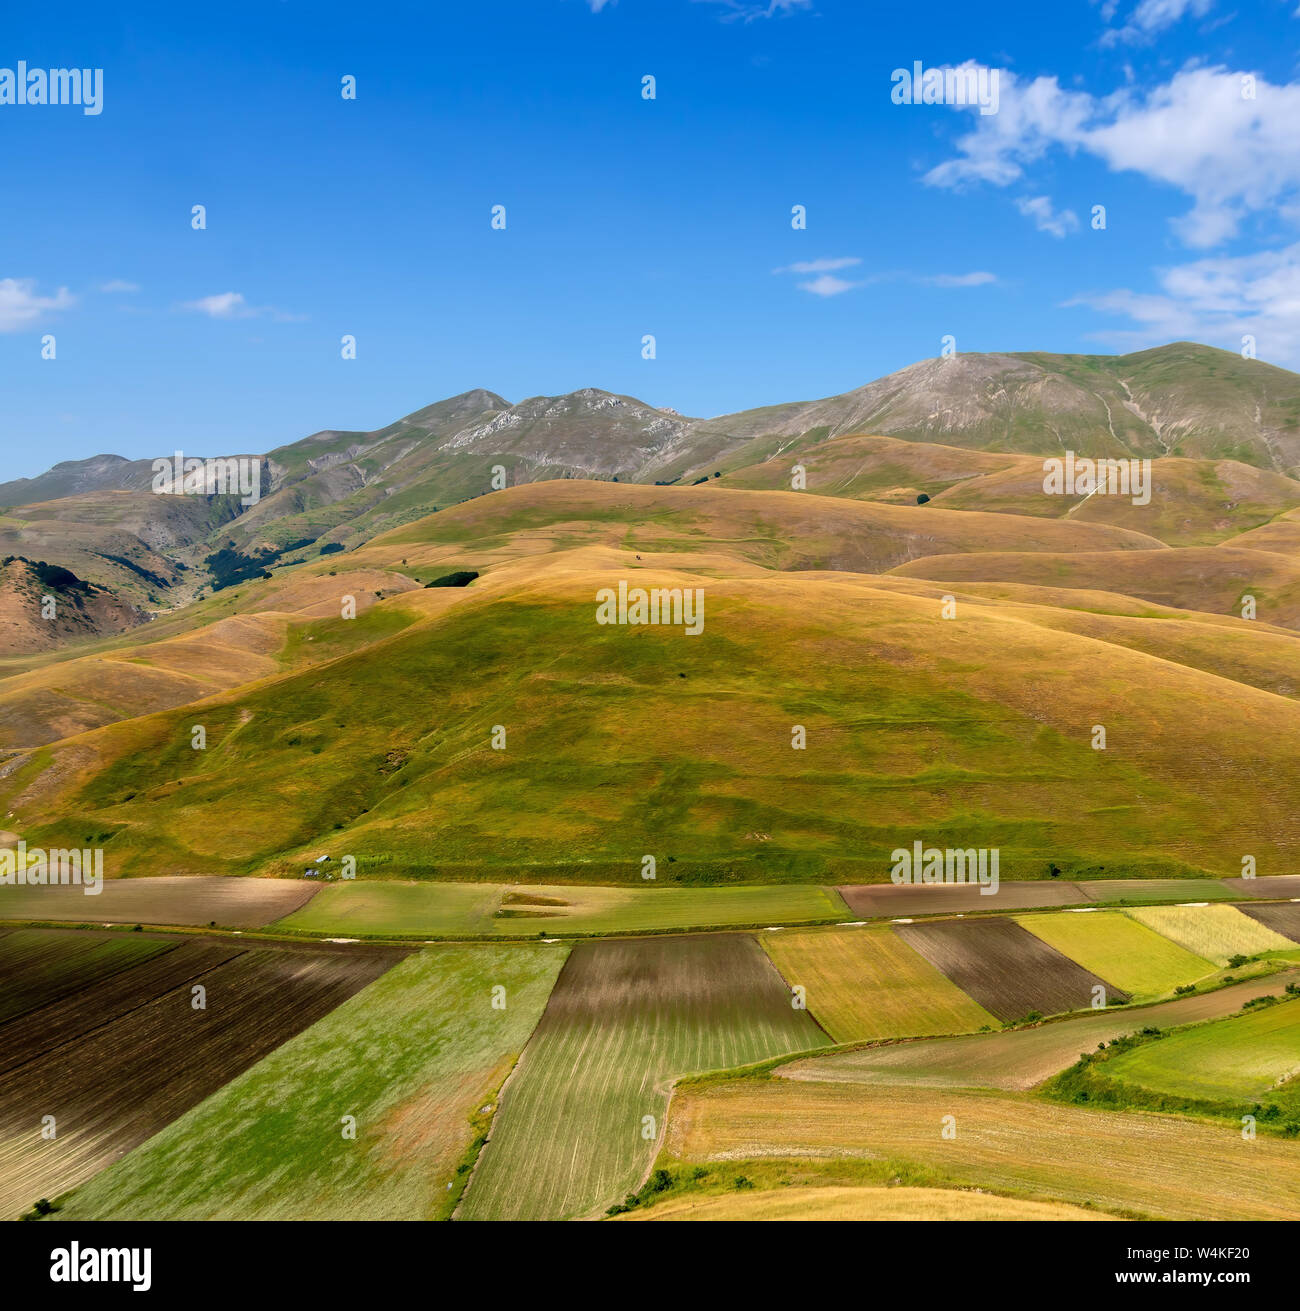 Castelluccio di Norcia, in Umbria, Italy. Fields and hills, sunny day. Colourful landscape. Stock Photo